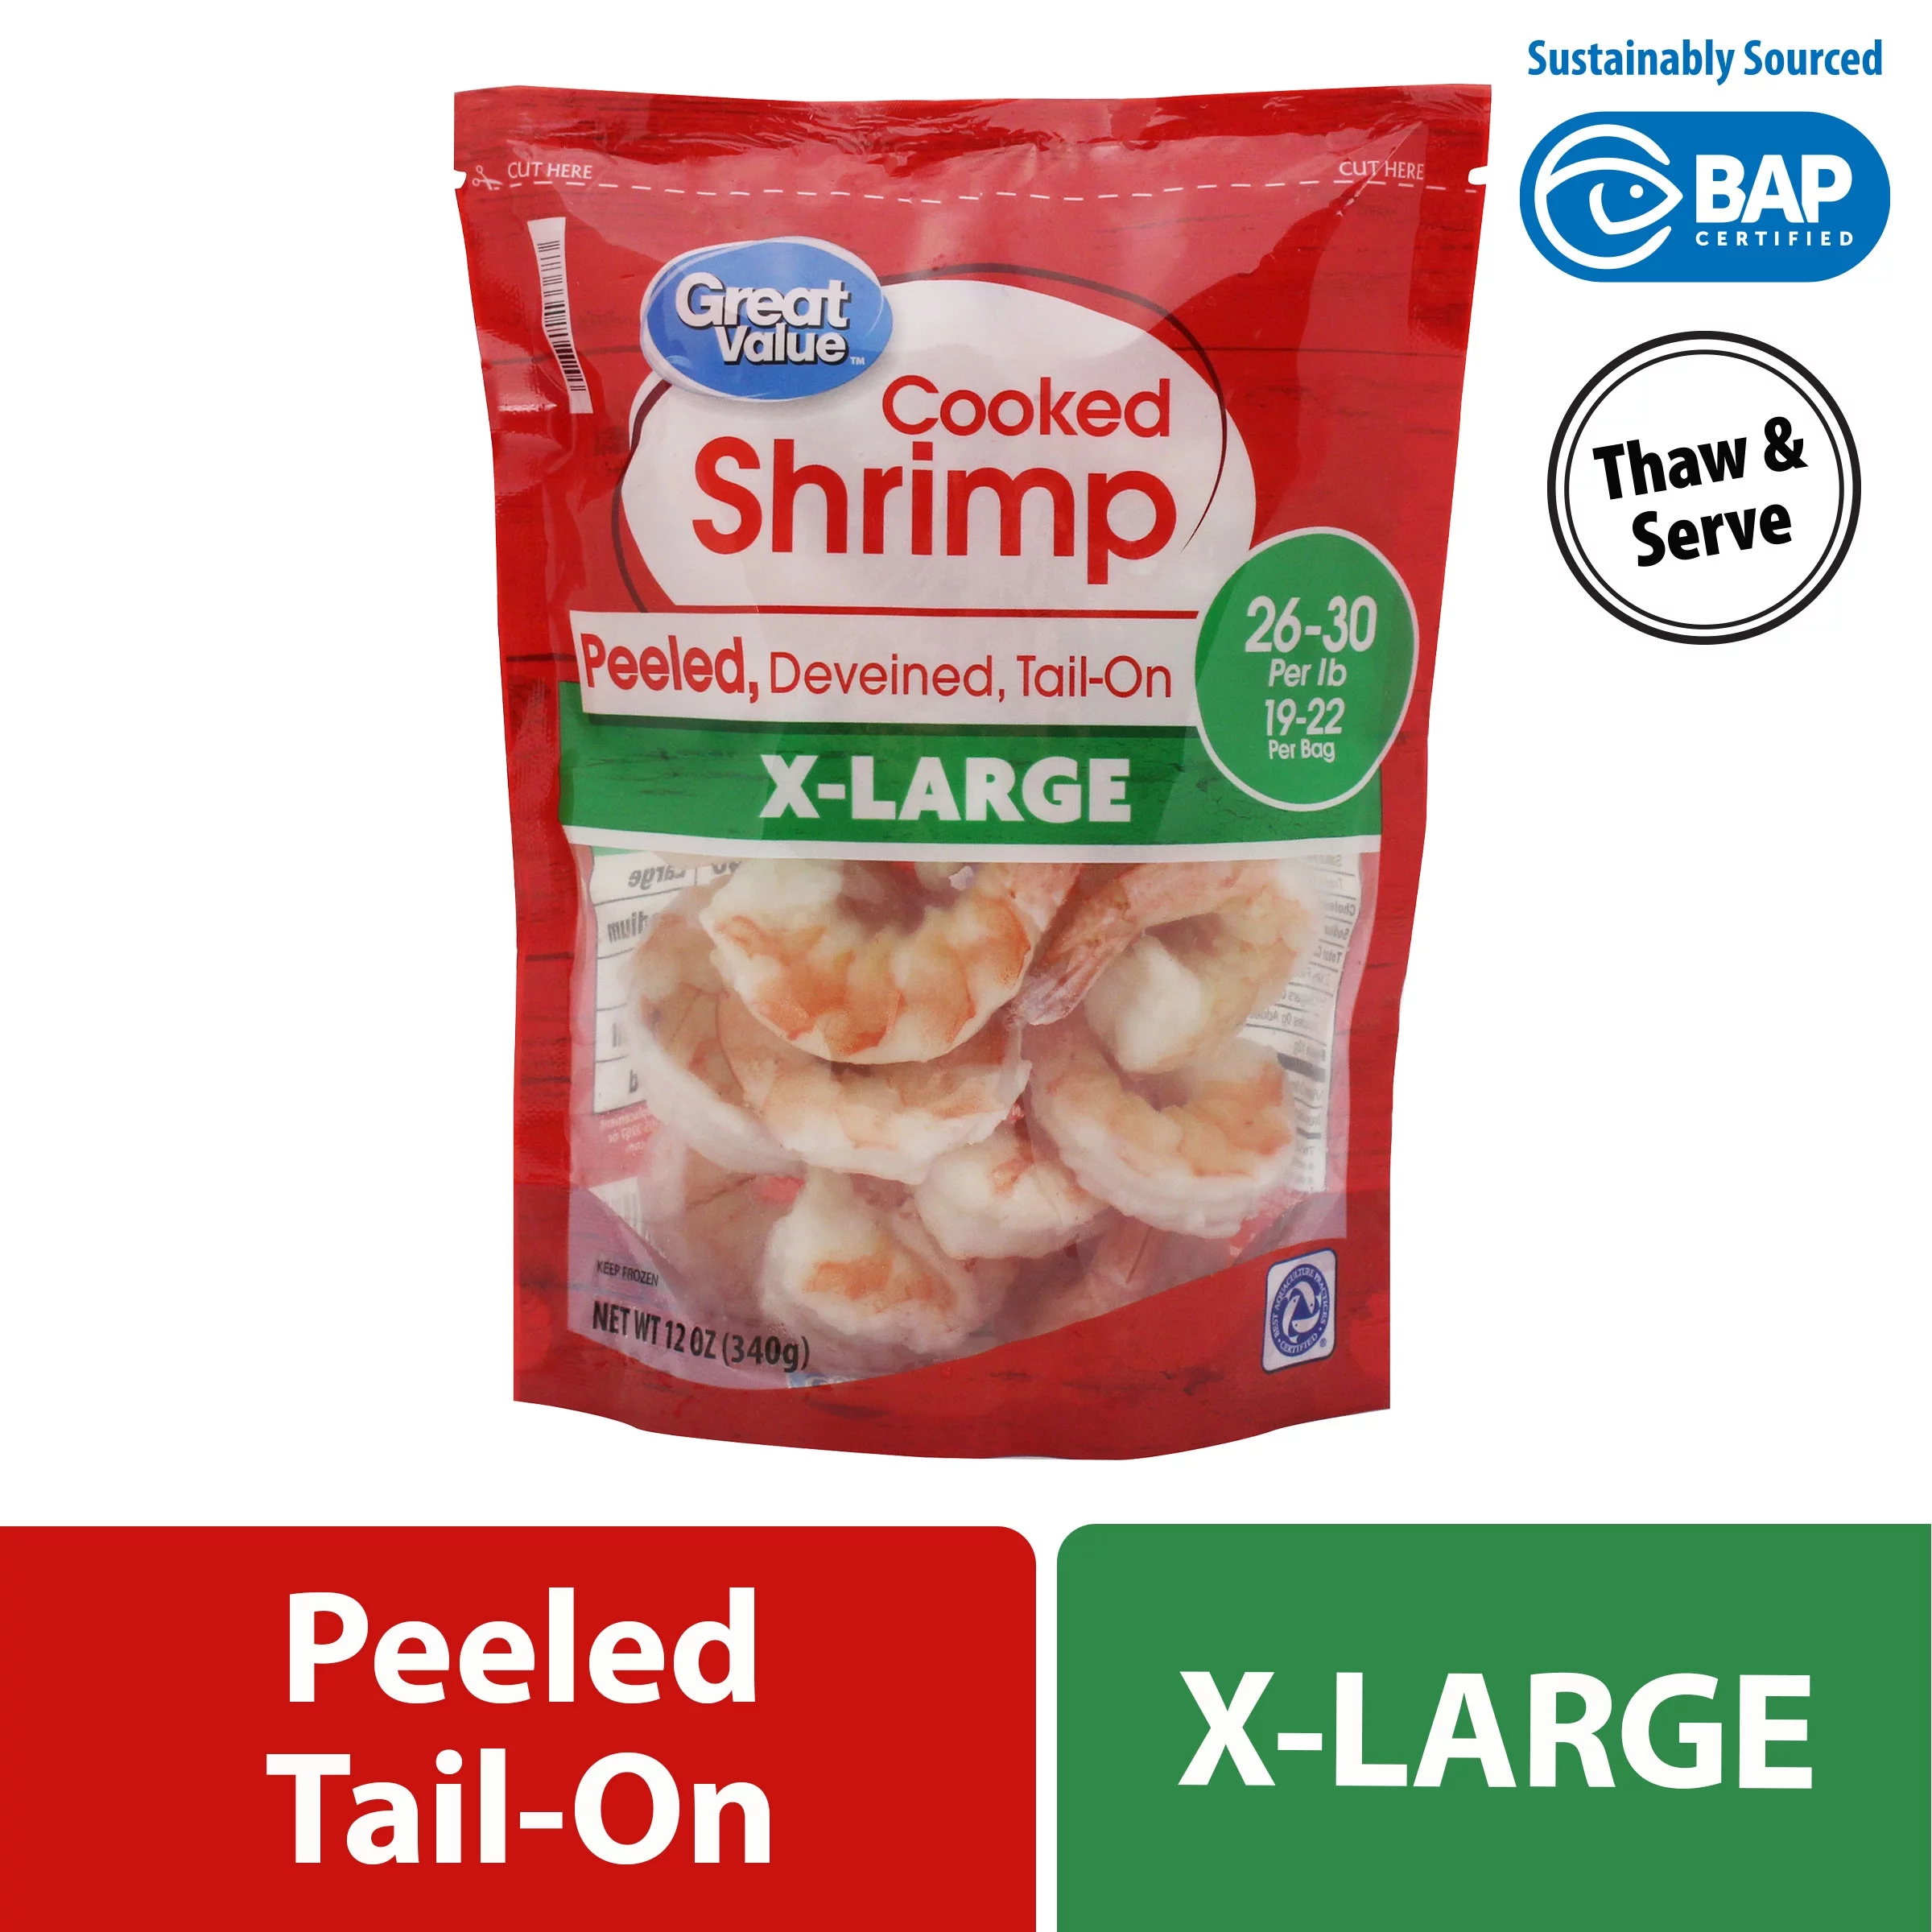 Extra Large Cooked Shrimp, 12 oz